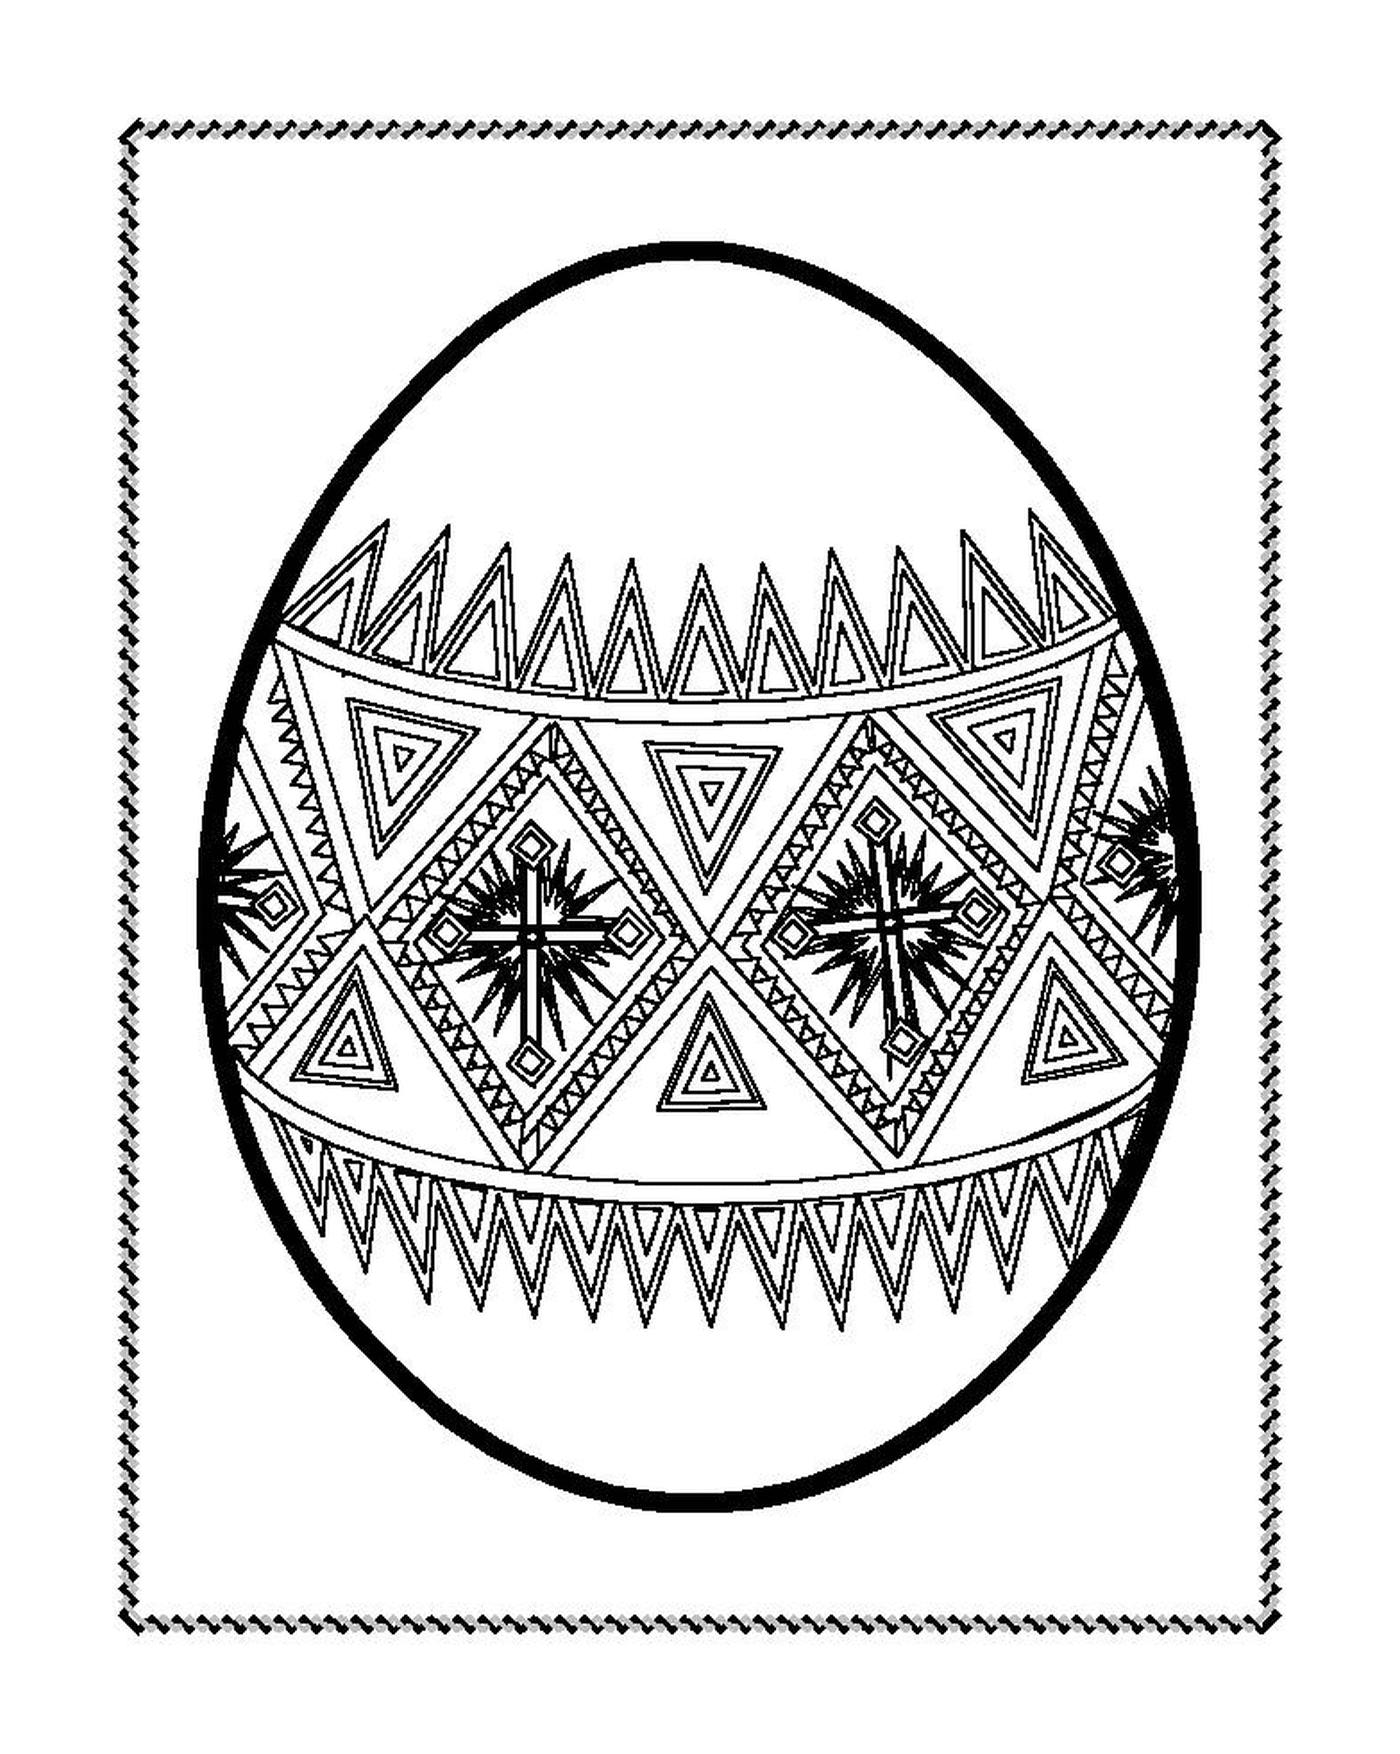  Um ovo de Páscoa decorado com motivos geométricos 